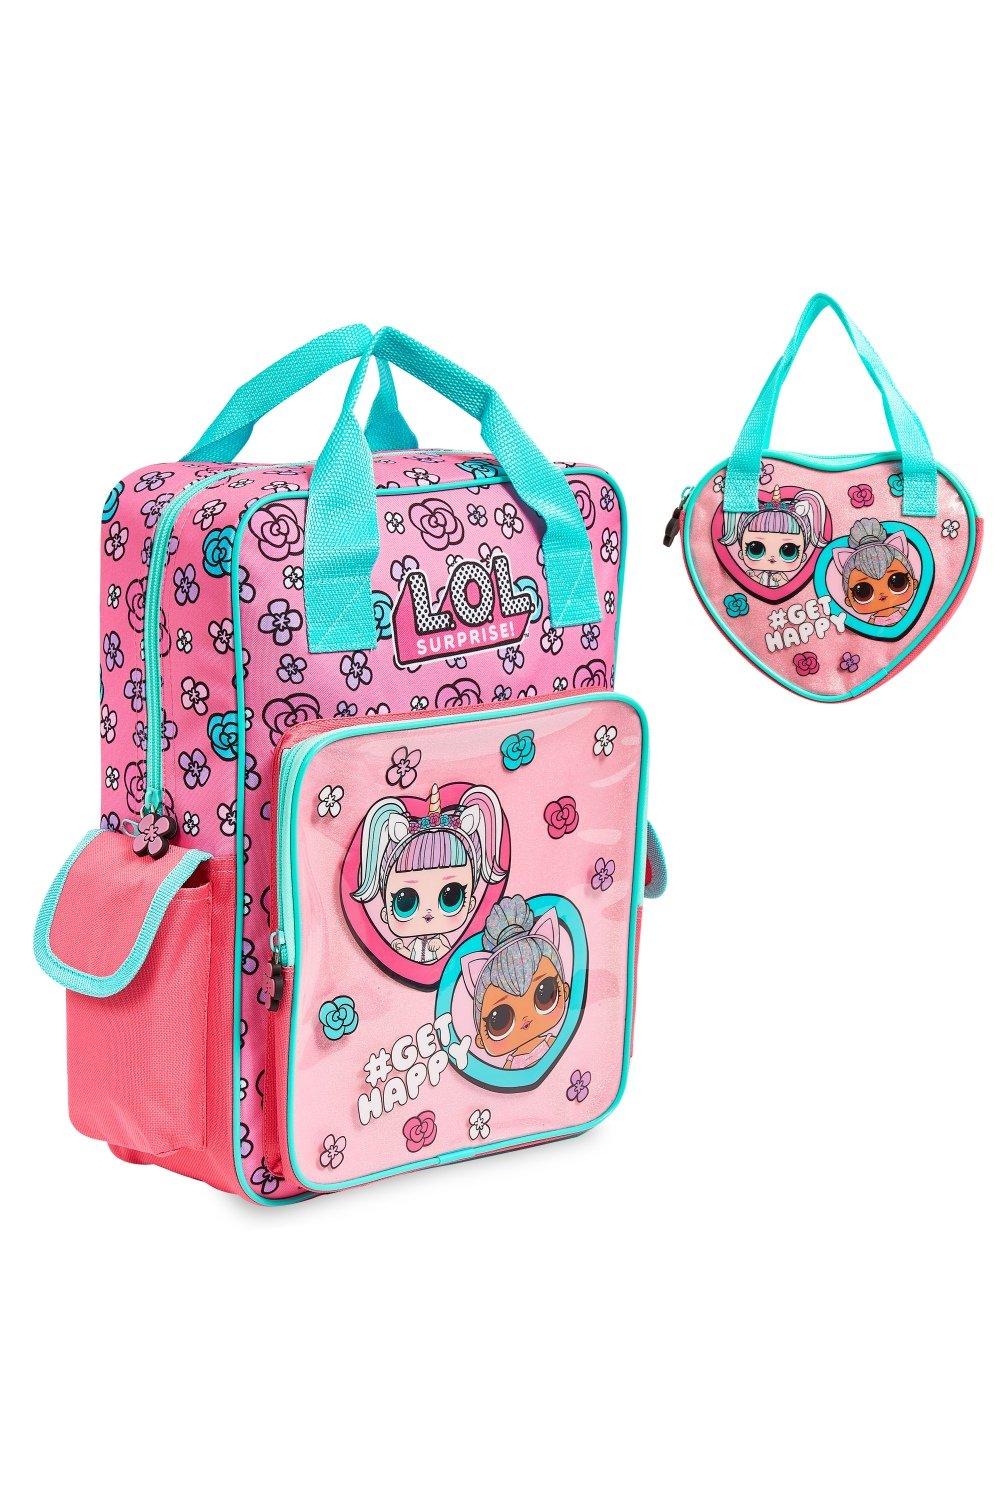 Сумочка и рюкзак Unicorn and Kitty Queen L.O.L. Surprise, розовый рюкзак унисекс последний из сша для подростков школьные ранцы для мальчиков и девочек рюкзак для ноутбука дорожный ранец